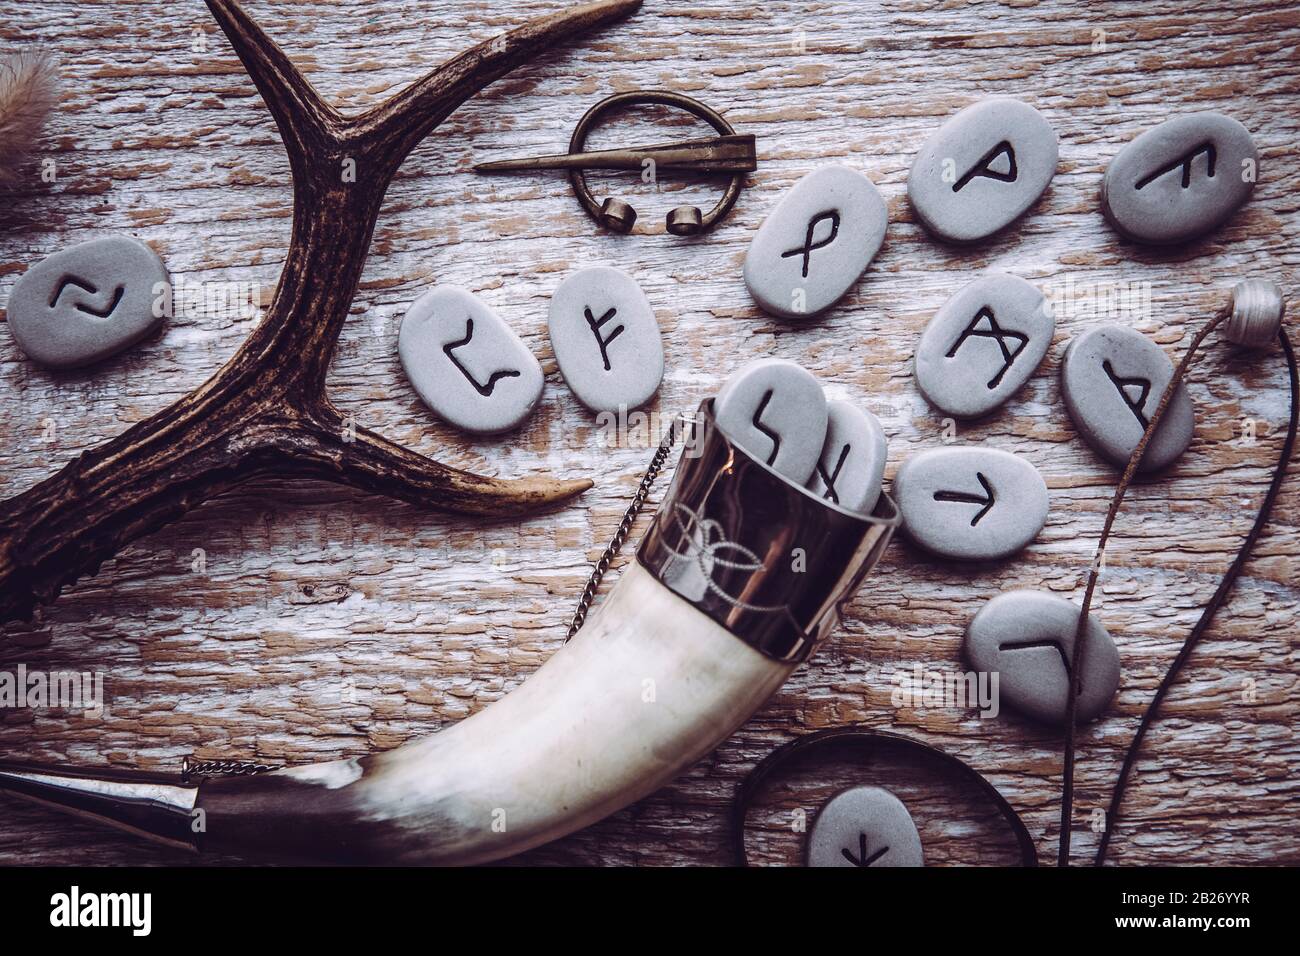 Vue plate sur les pierres d'rune avec divers objets de style de l'ère viking. Concept de style de vie ancestral de divination et de vikings. Banque D'Images